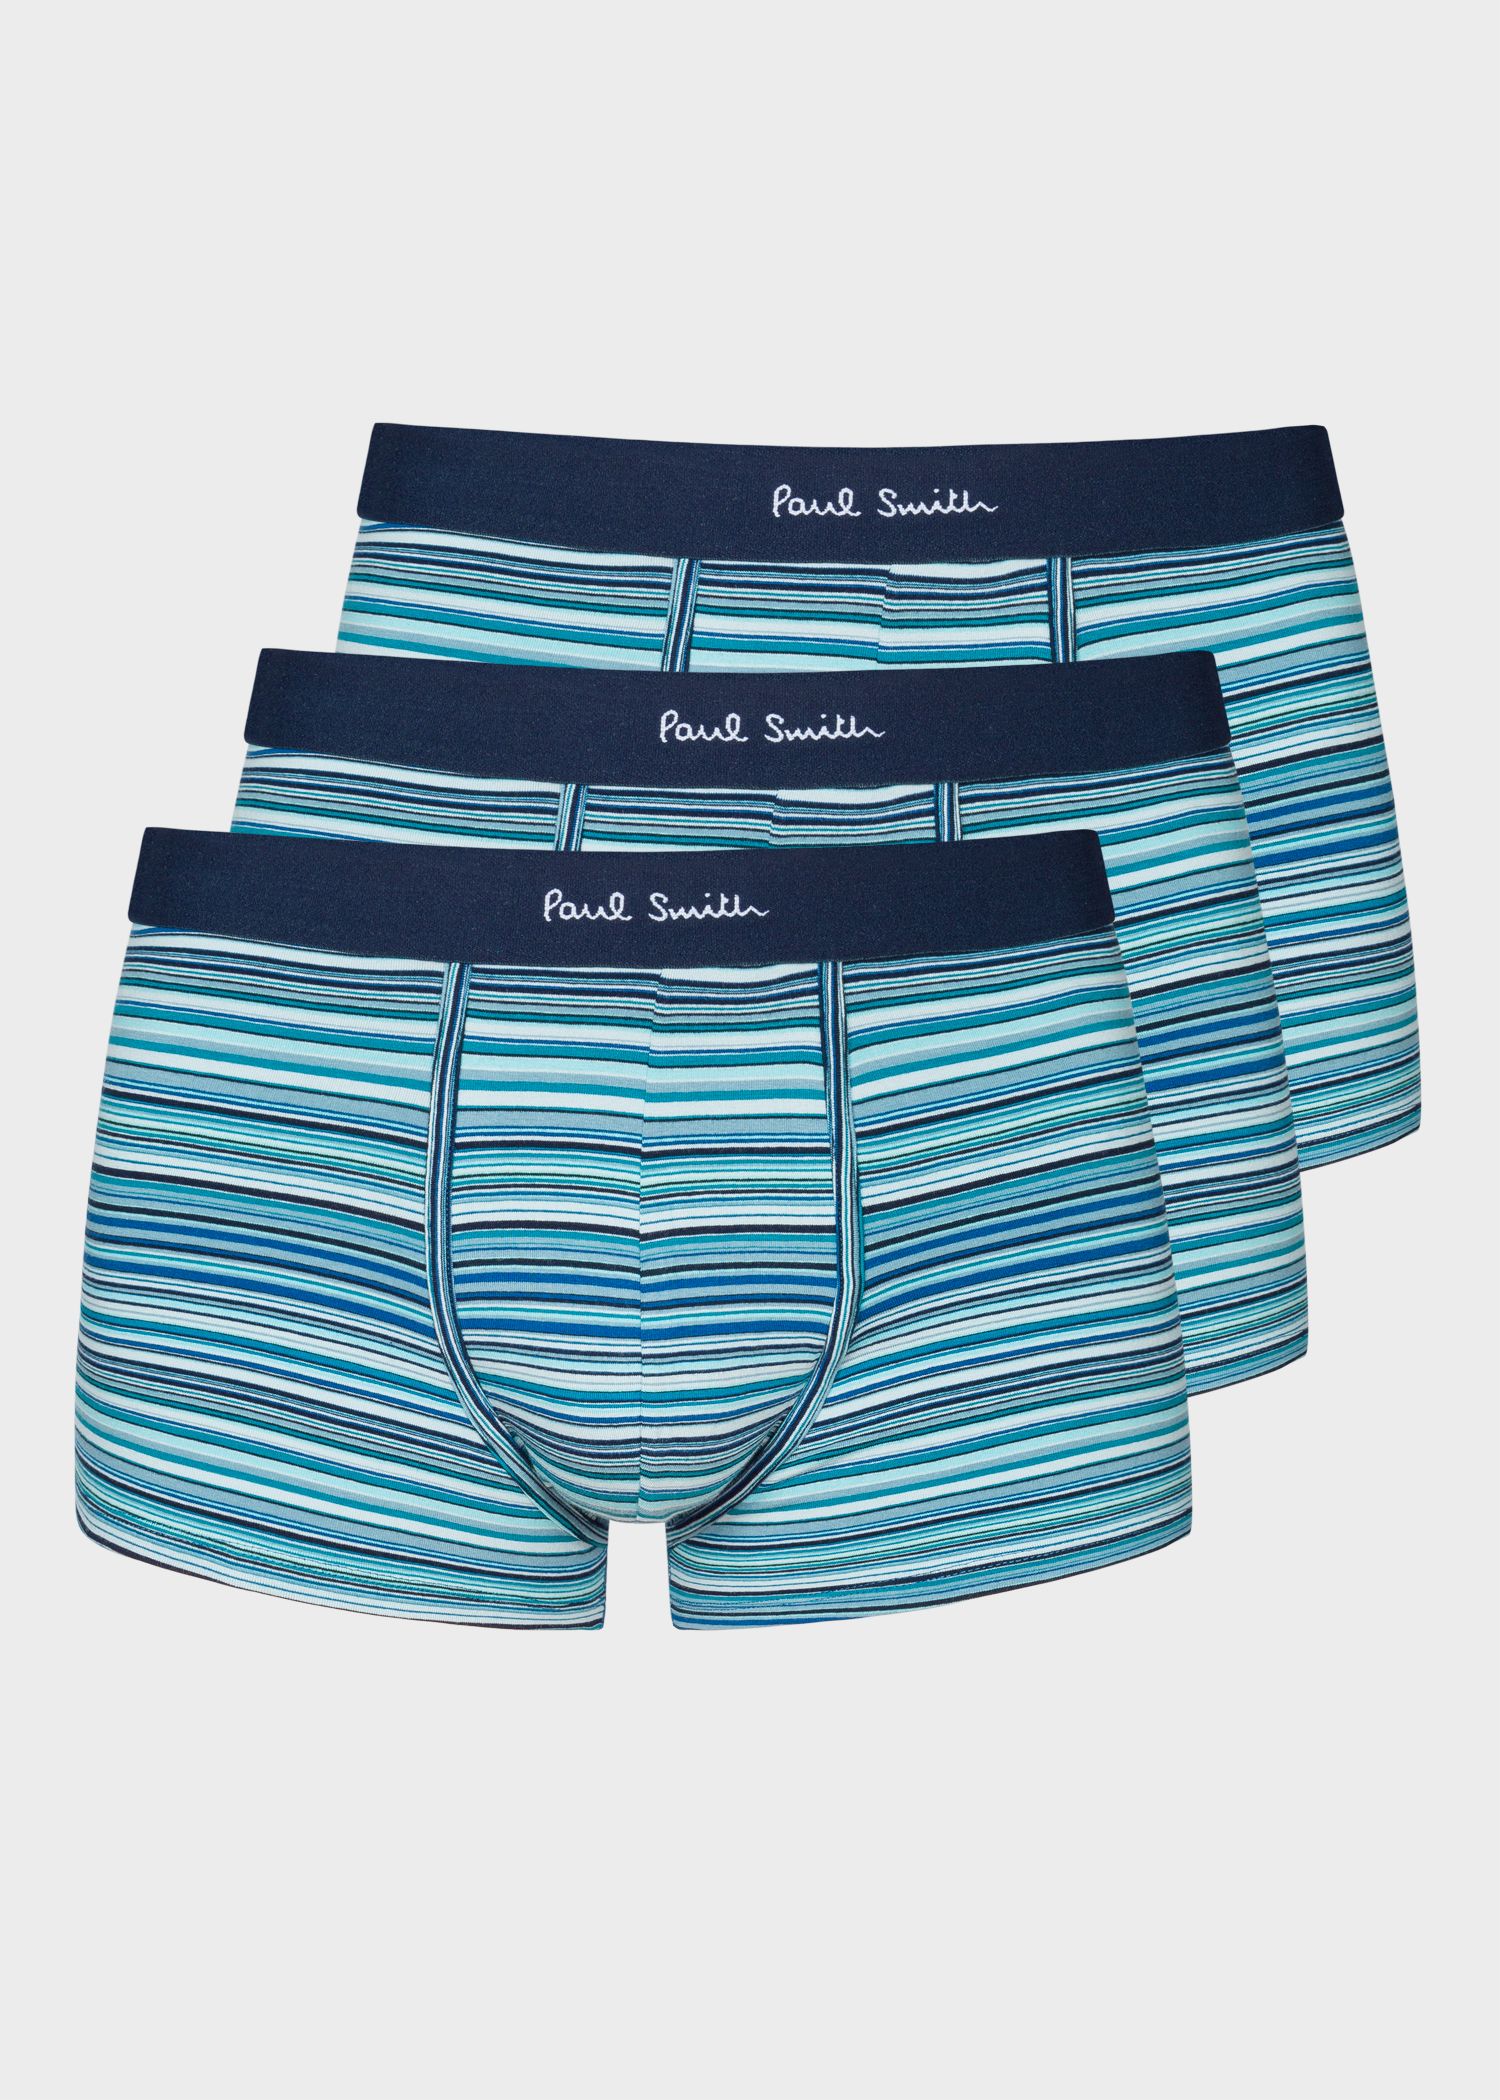 PAUL SMITH blue Signature Stripe low rise boxer briefs boxer shorts XL